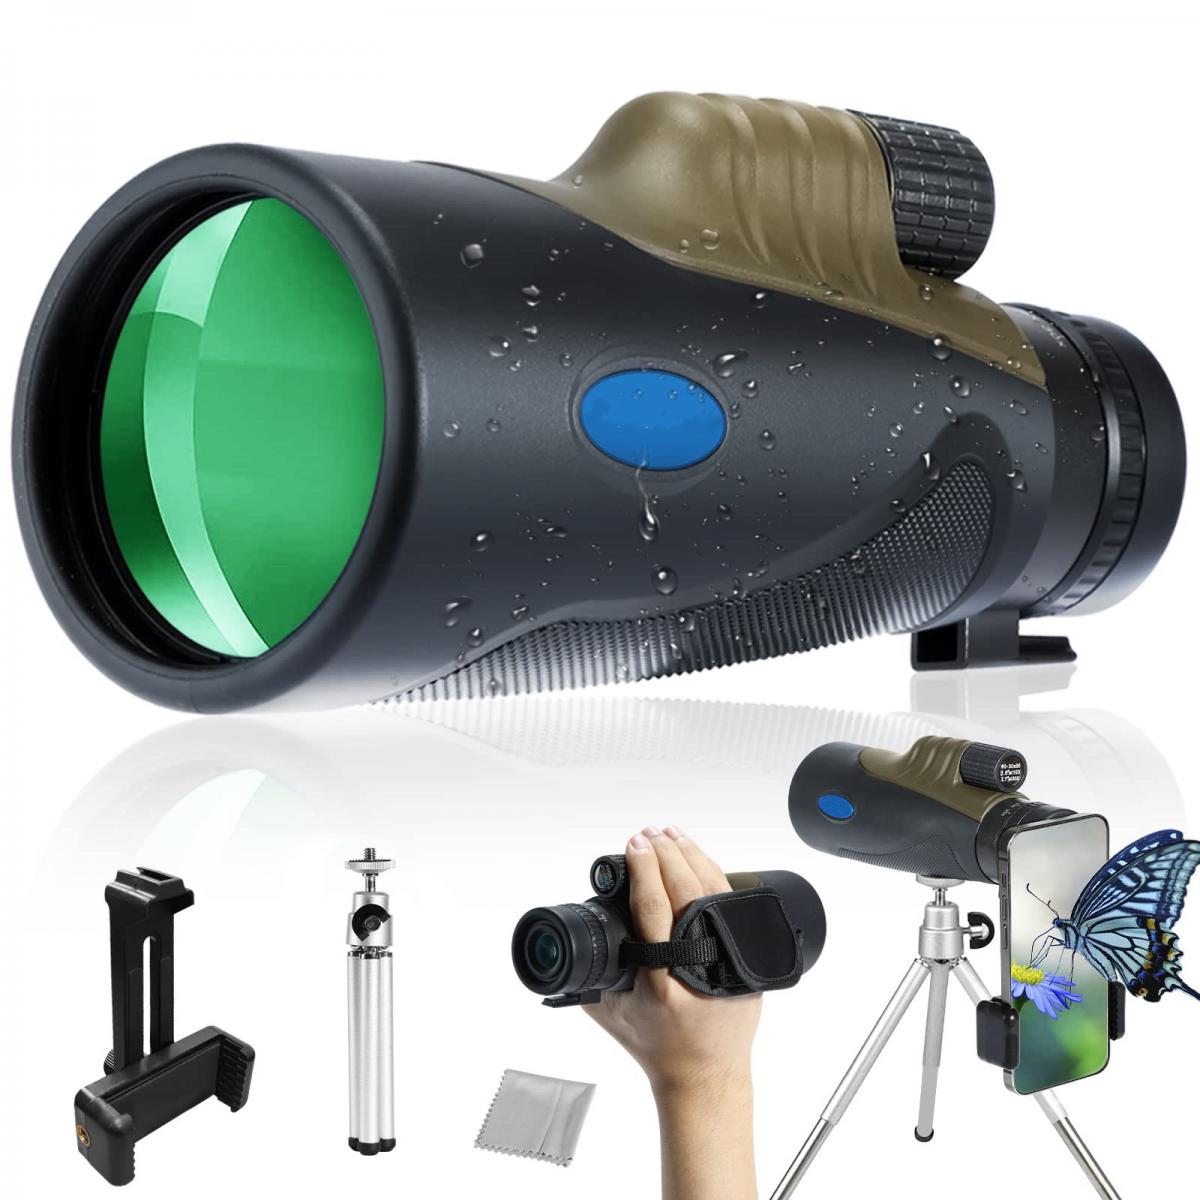 Mire telescopique Caméra de Vision Nocturne numérique monoculaire